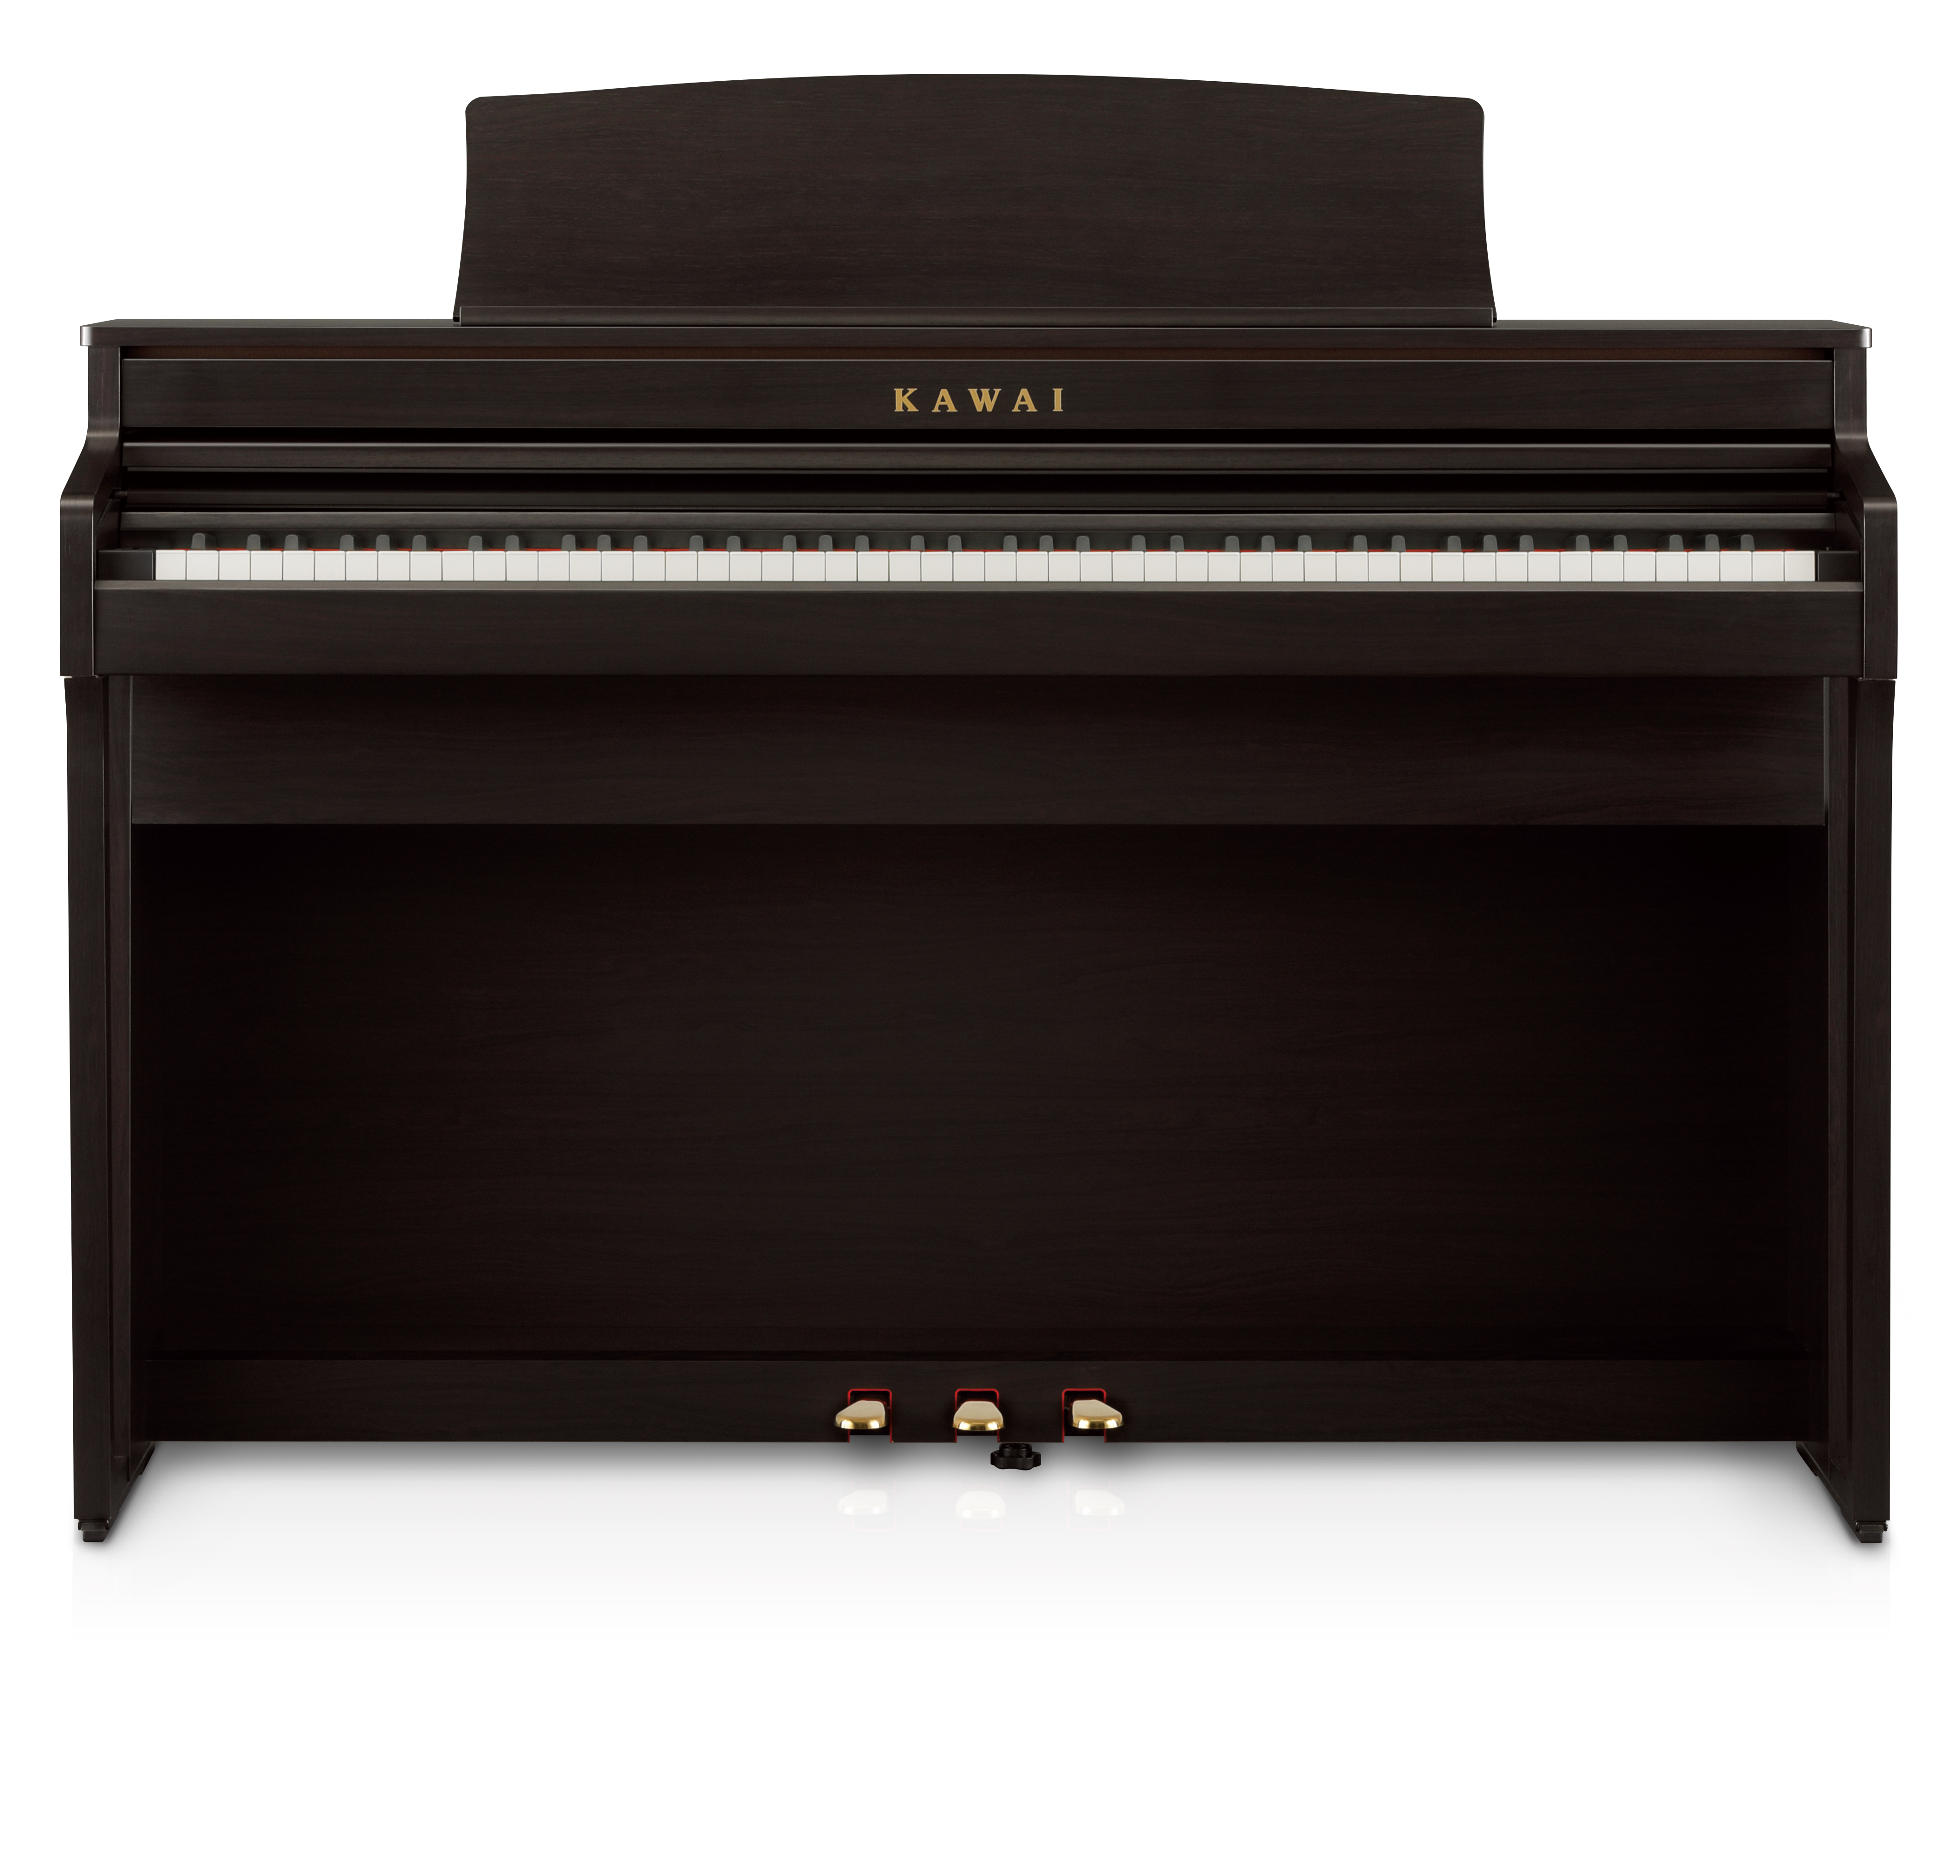 Piano numérique Kawai CA-49 brun